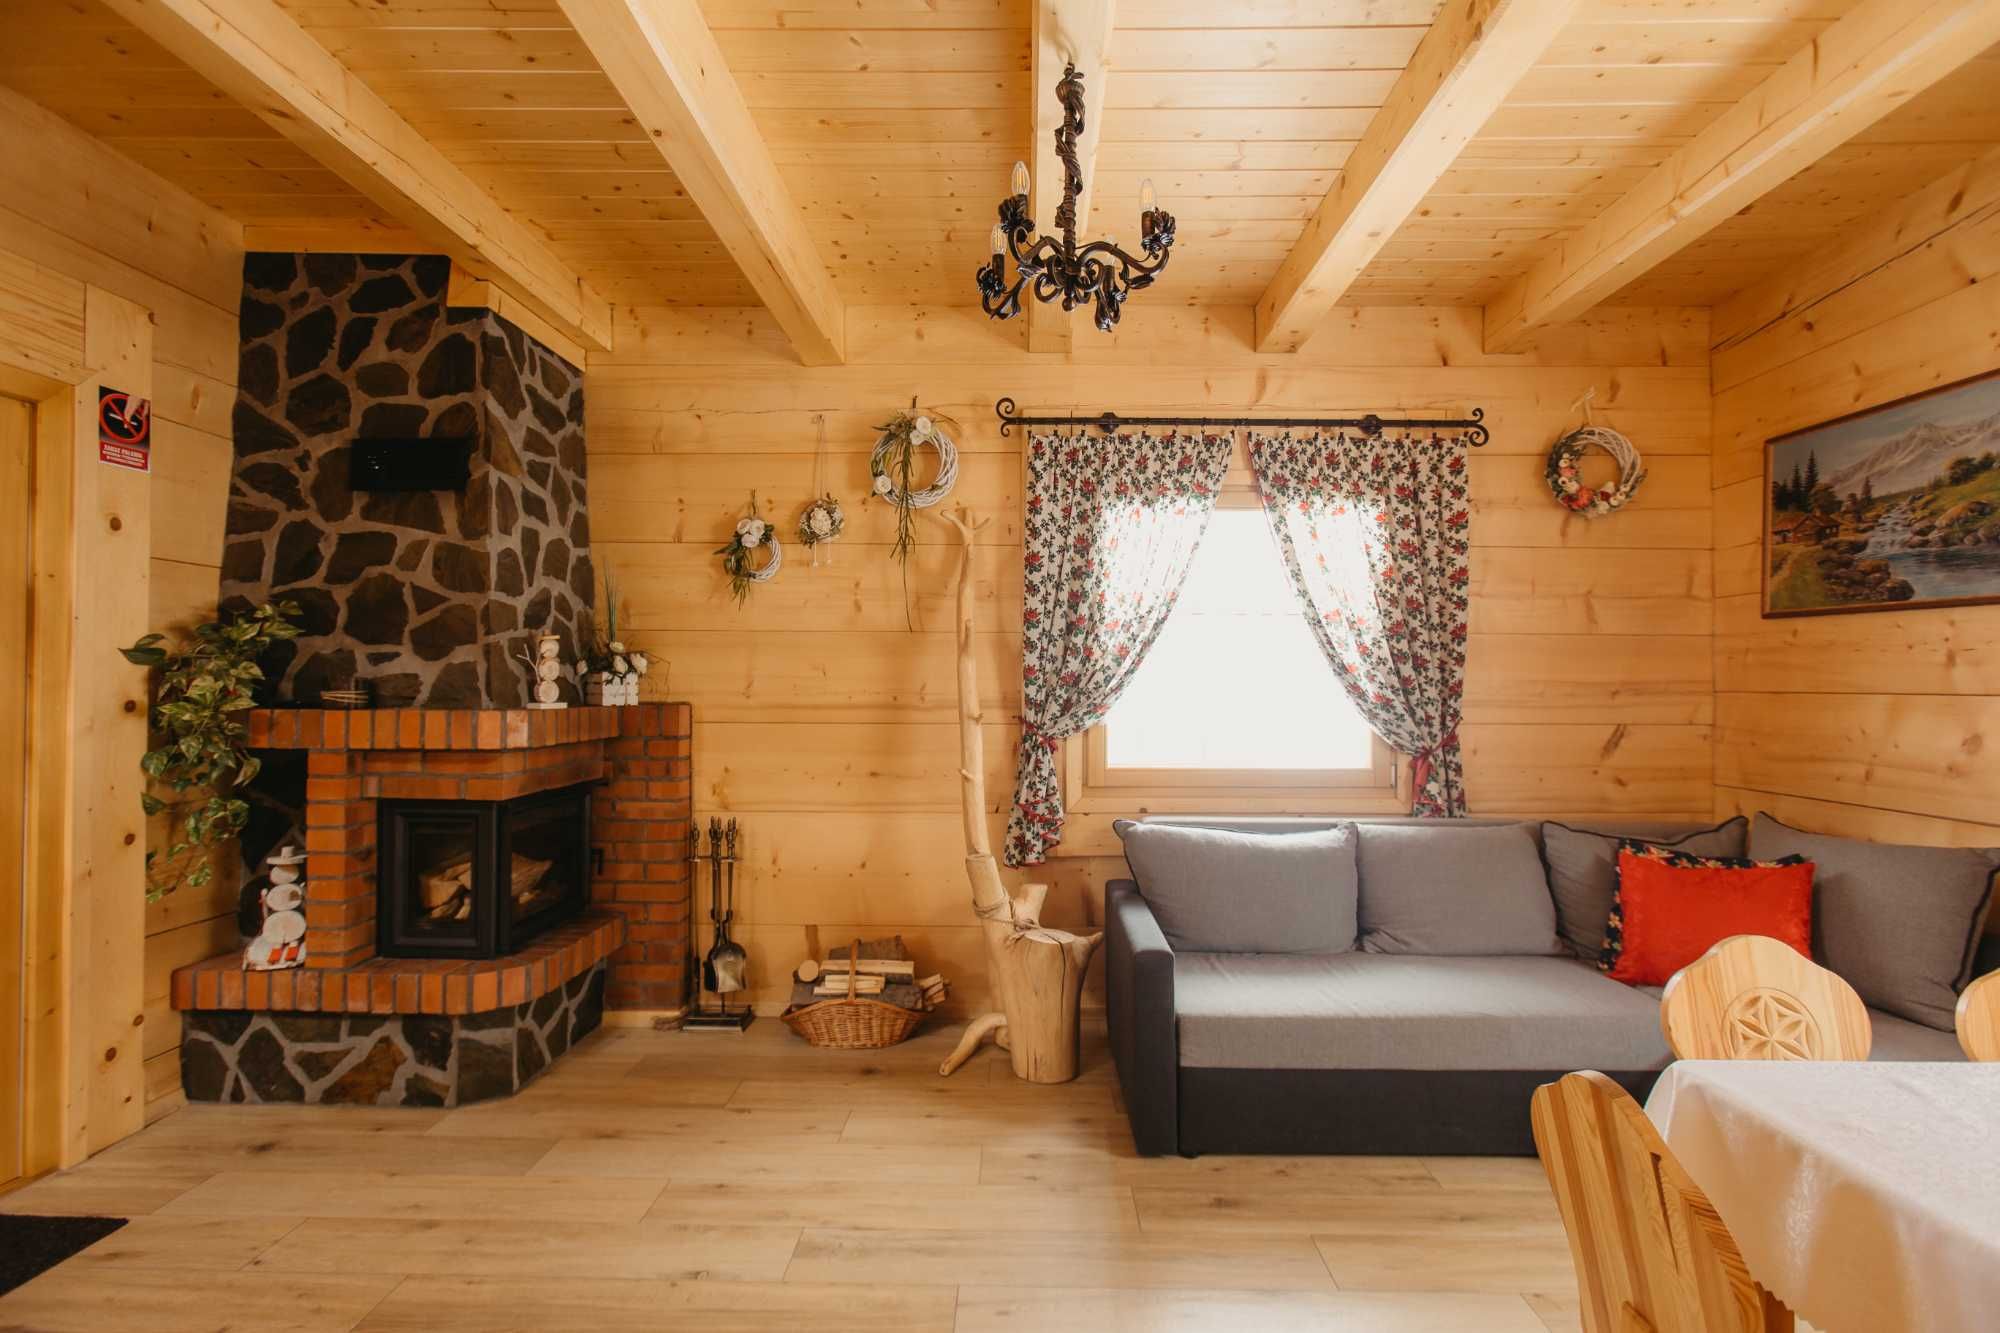 Domek drewniany w górach wakacje ,ferie, noclegi  wczasy bilard sauna